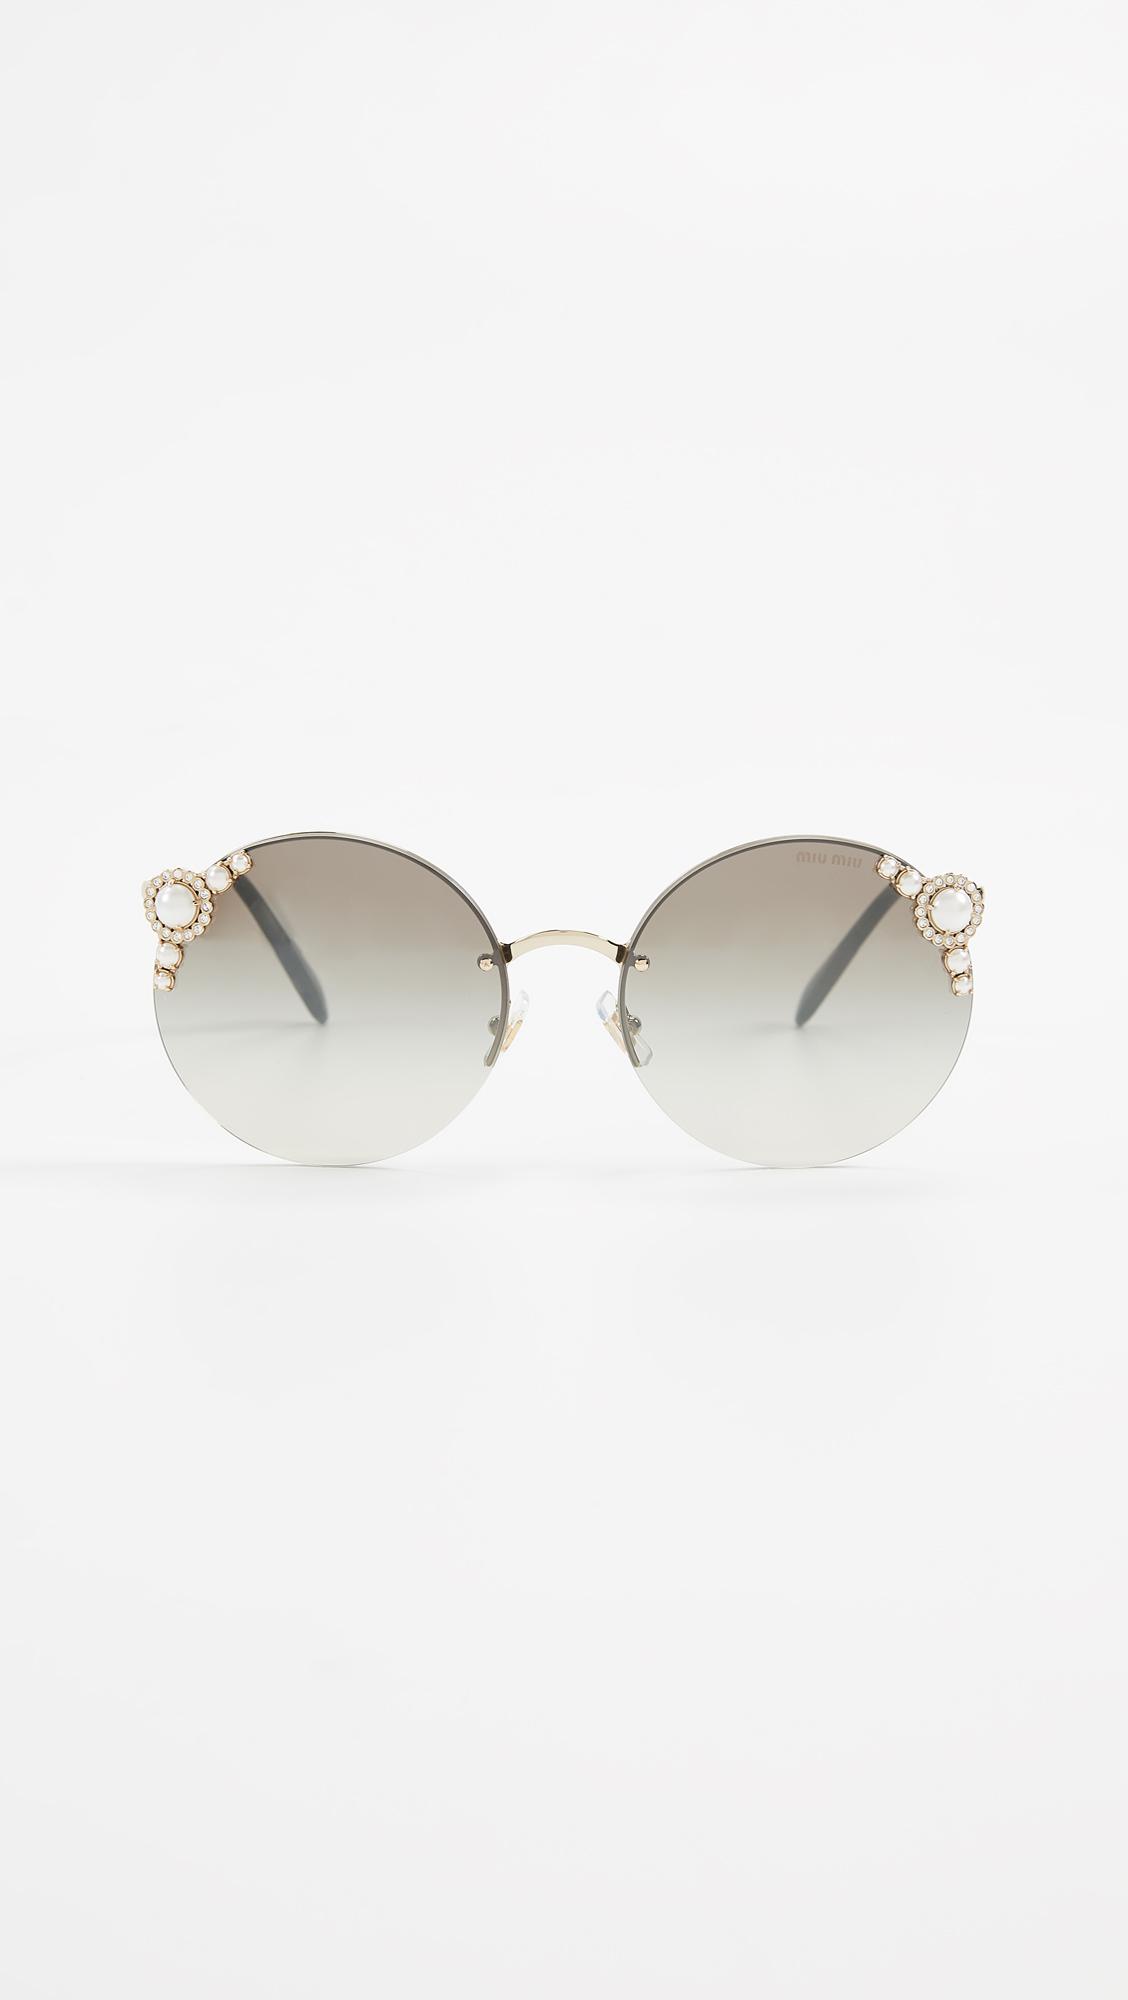 Miu Miu Round Imitation Pearl Sunglasses in Metallic | Lyst